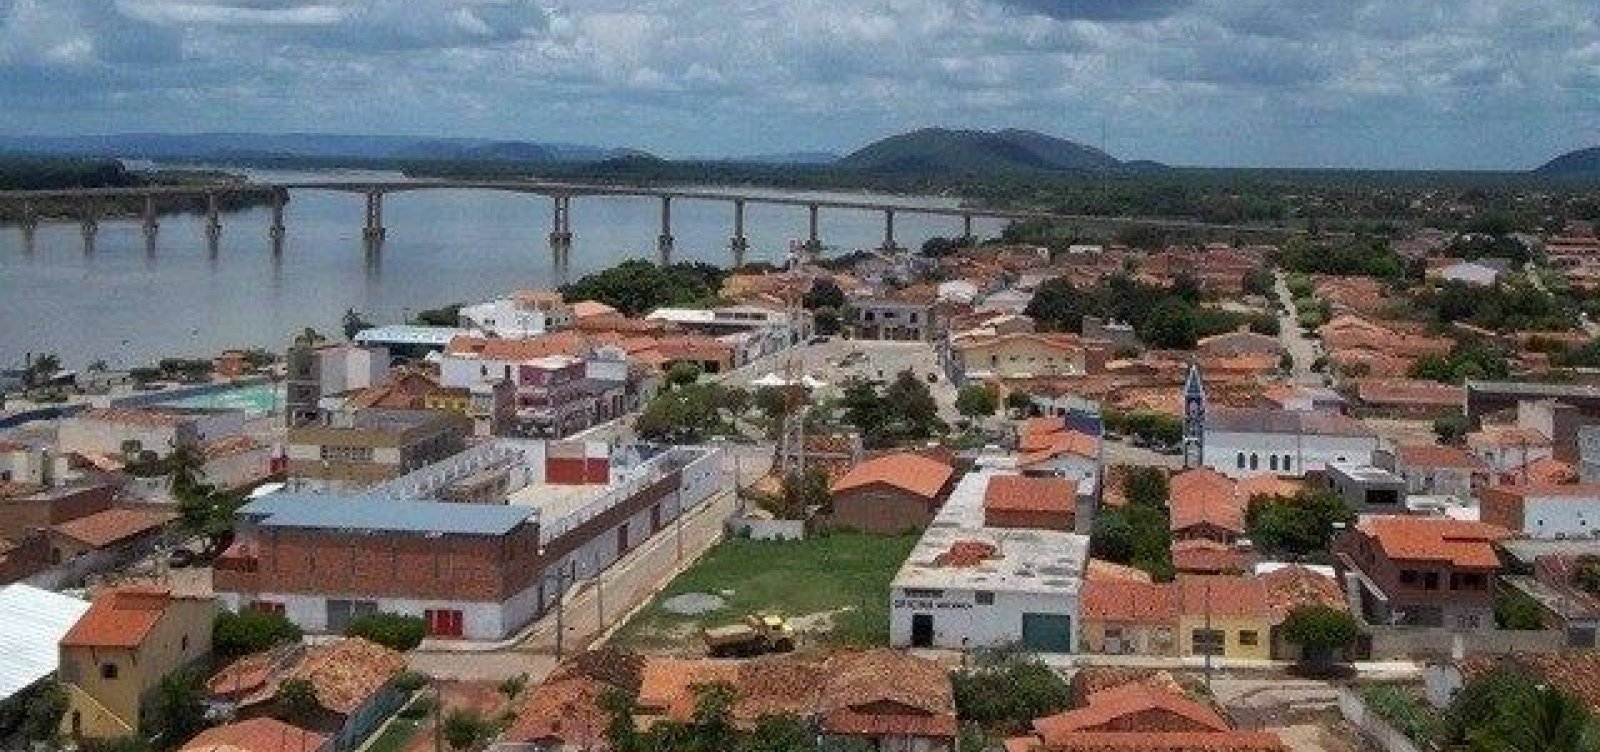 Desaparecido há quase um mês, casal é encontrado morto no oeste da Bahia 